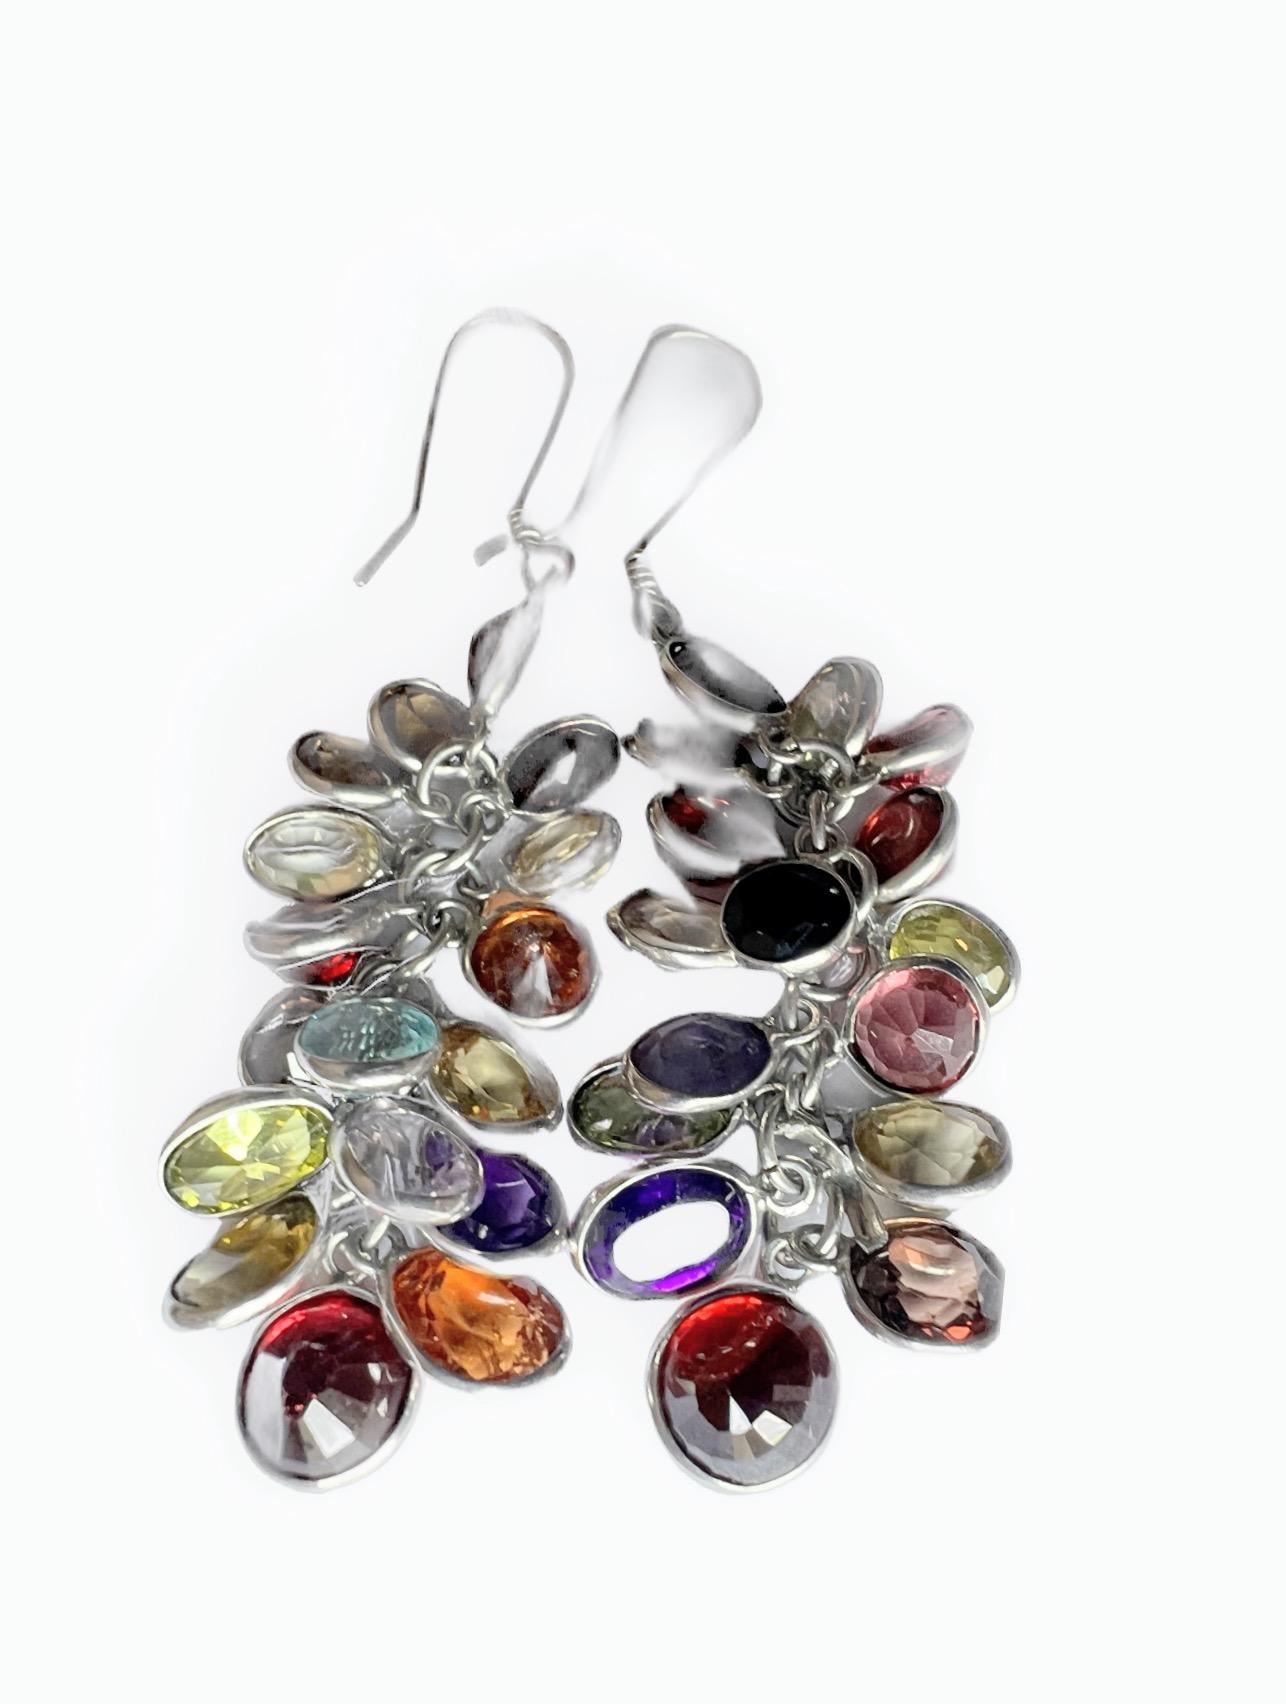 Artist Natural Garnet Amethyst Spinel Mix Gem Cluster Earrings Sterling Silver For Sale